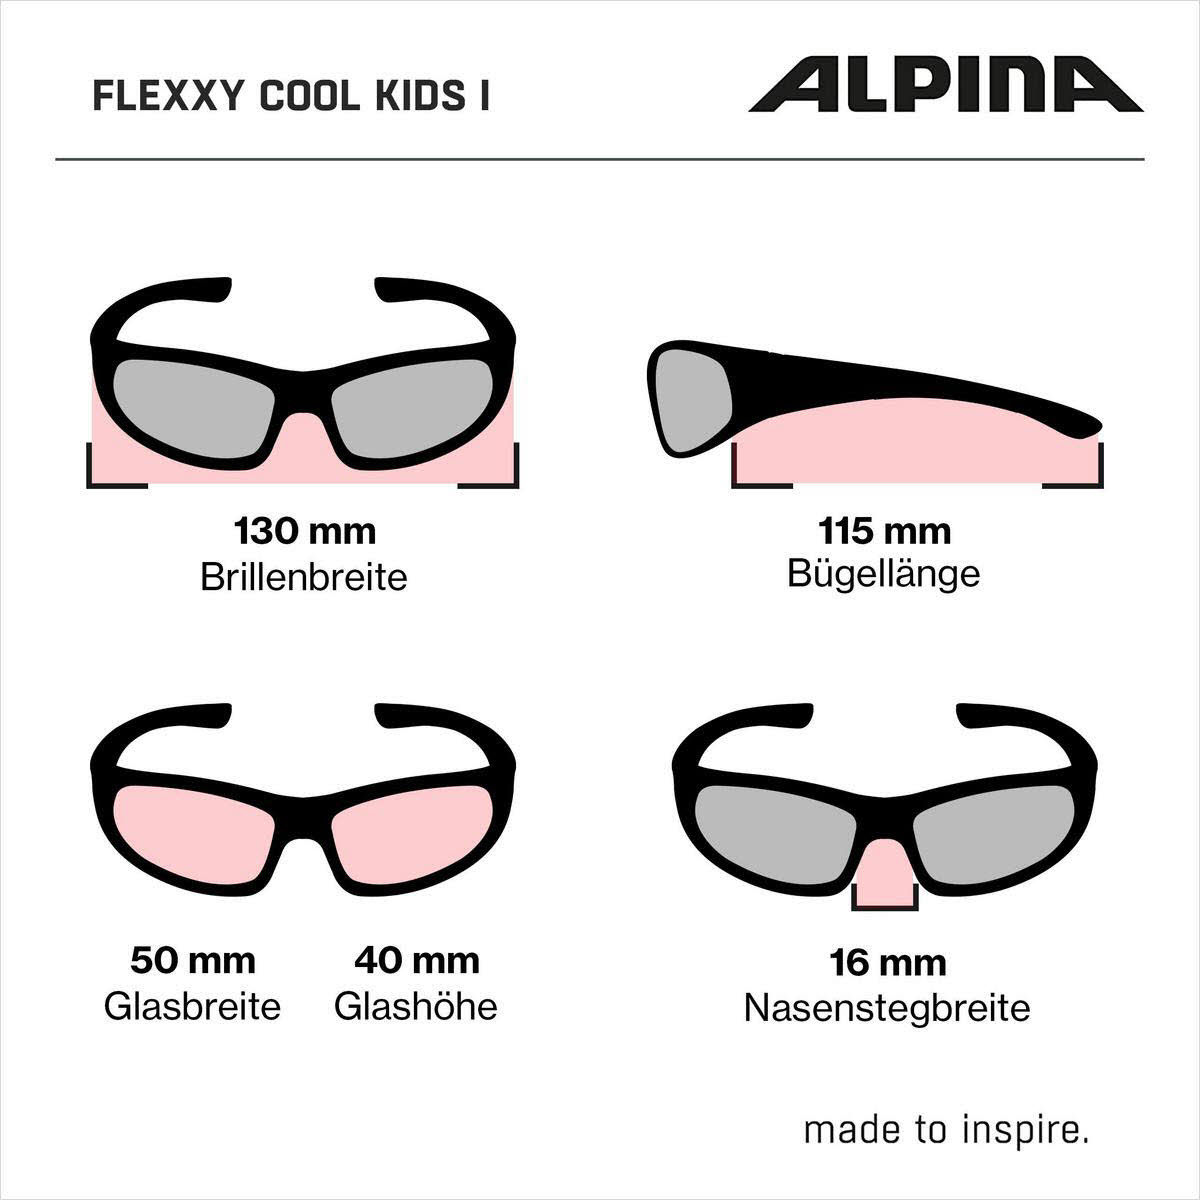 Alpina Flexxy Cool Kids I